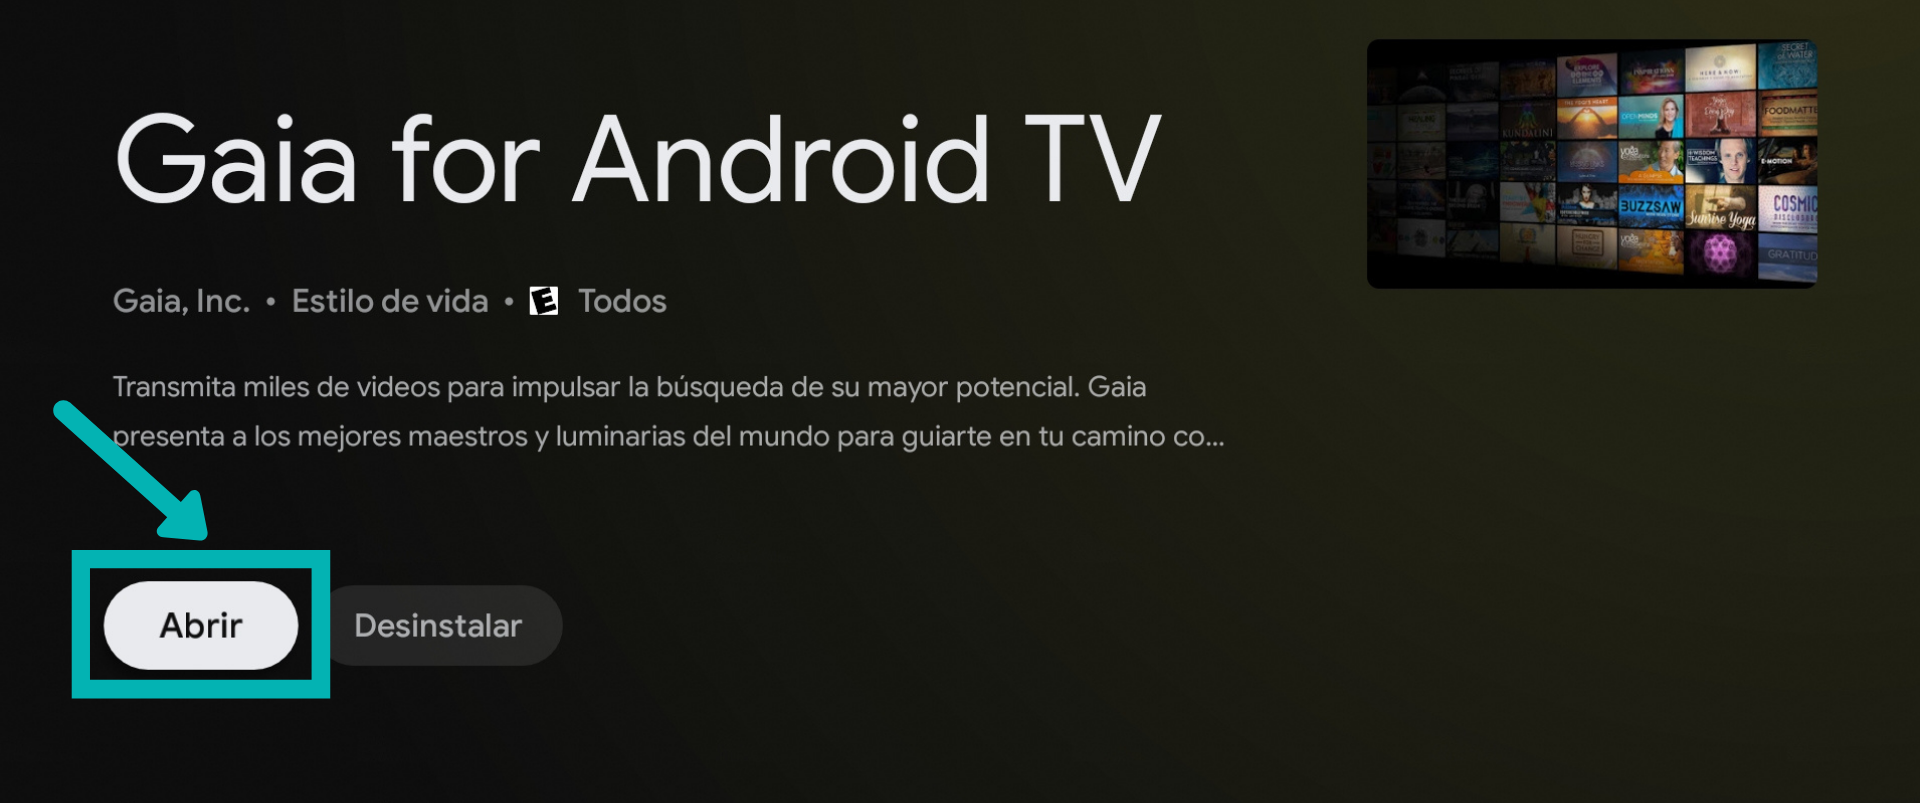 AndroidTV-login-5_en-us.png